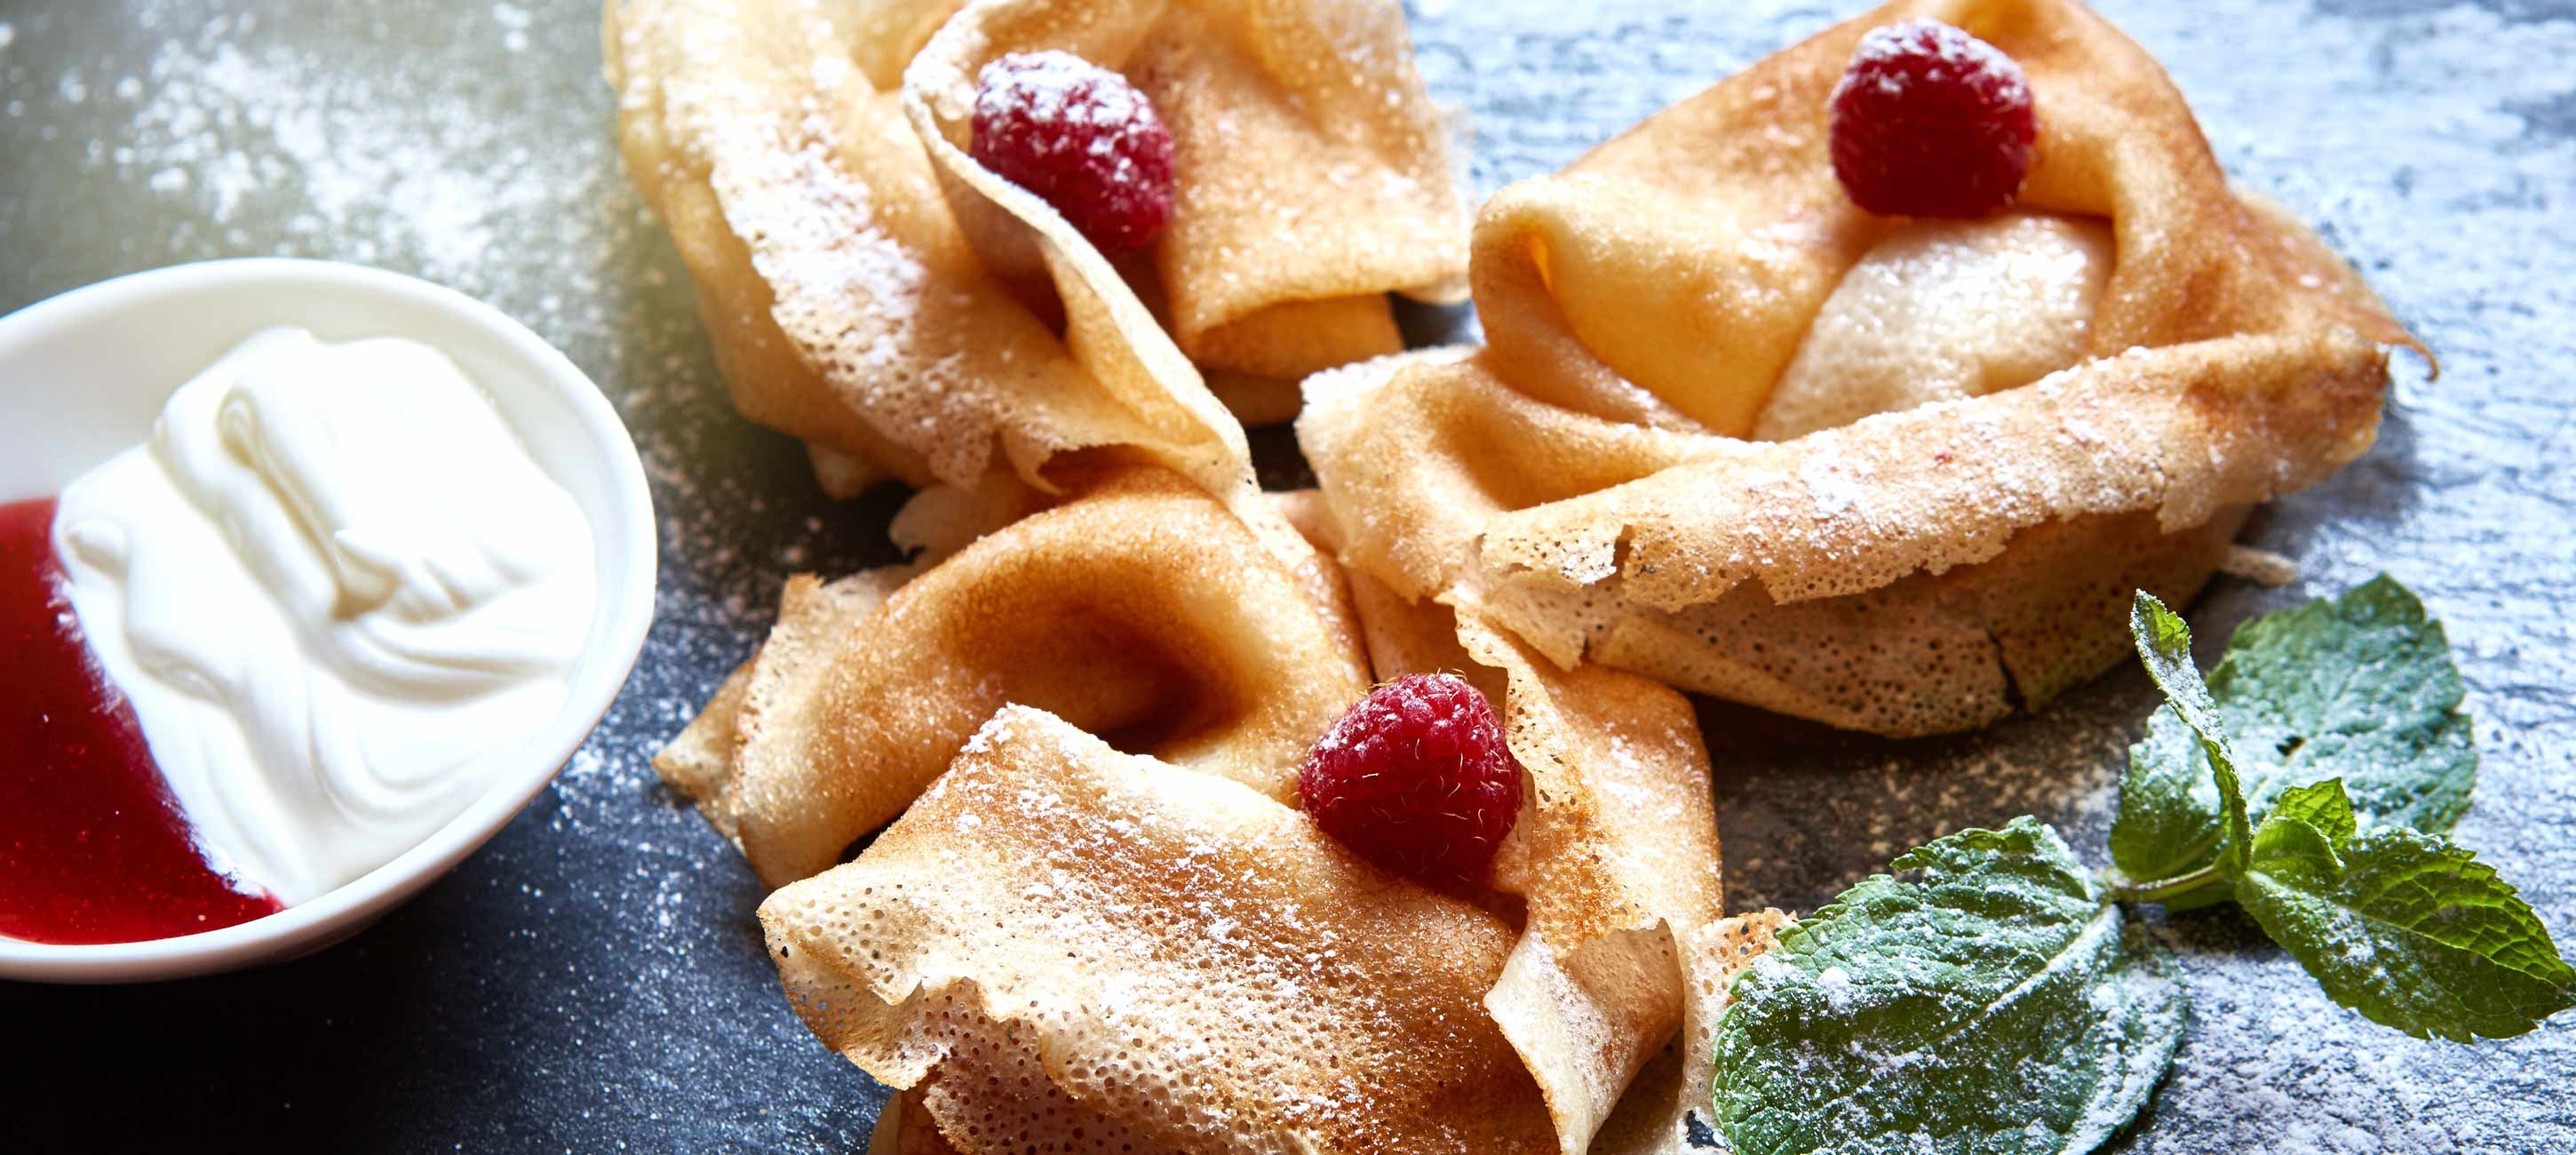 Crêpes mit Beeren- und Vanillesoße | Knuspr-Küche